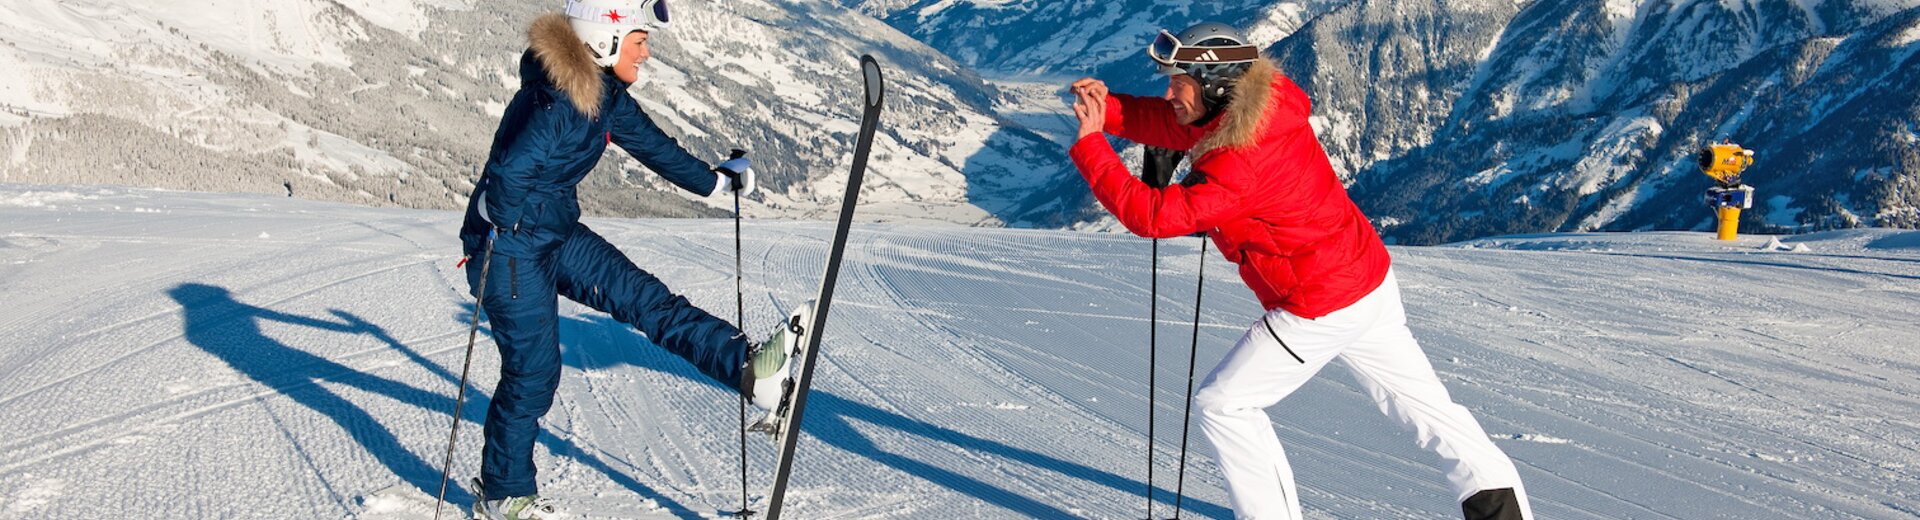 Erwachsene machen Fotos beim Skifahren